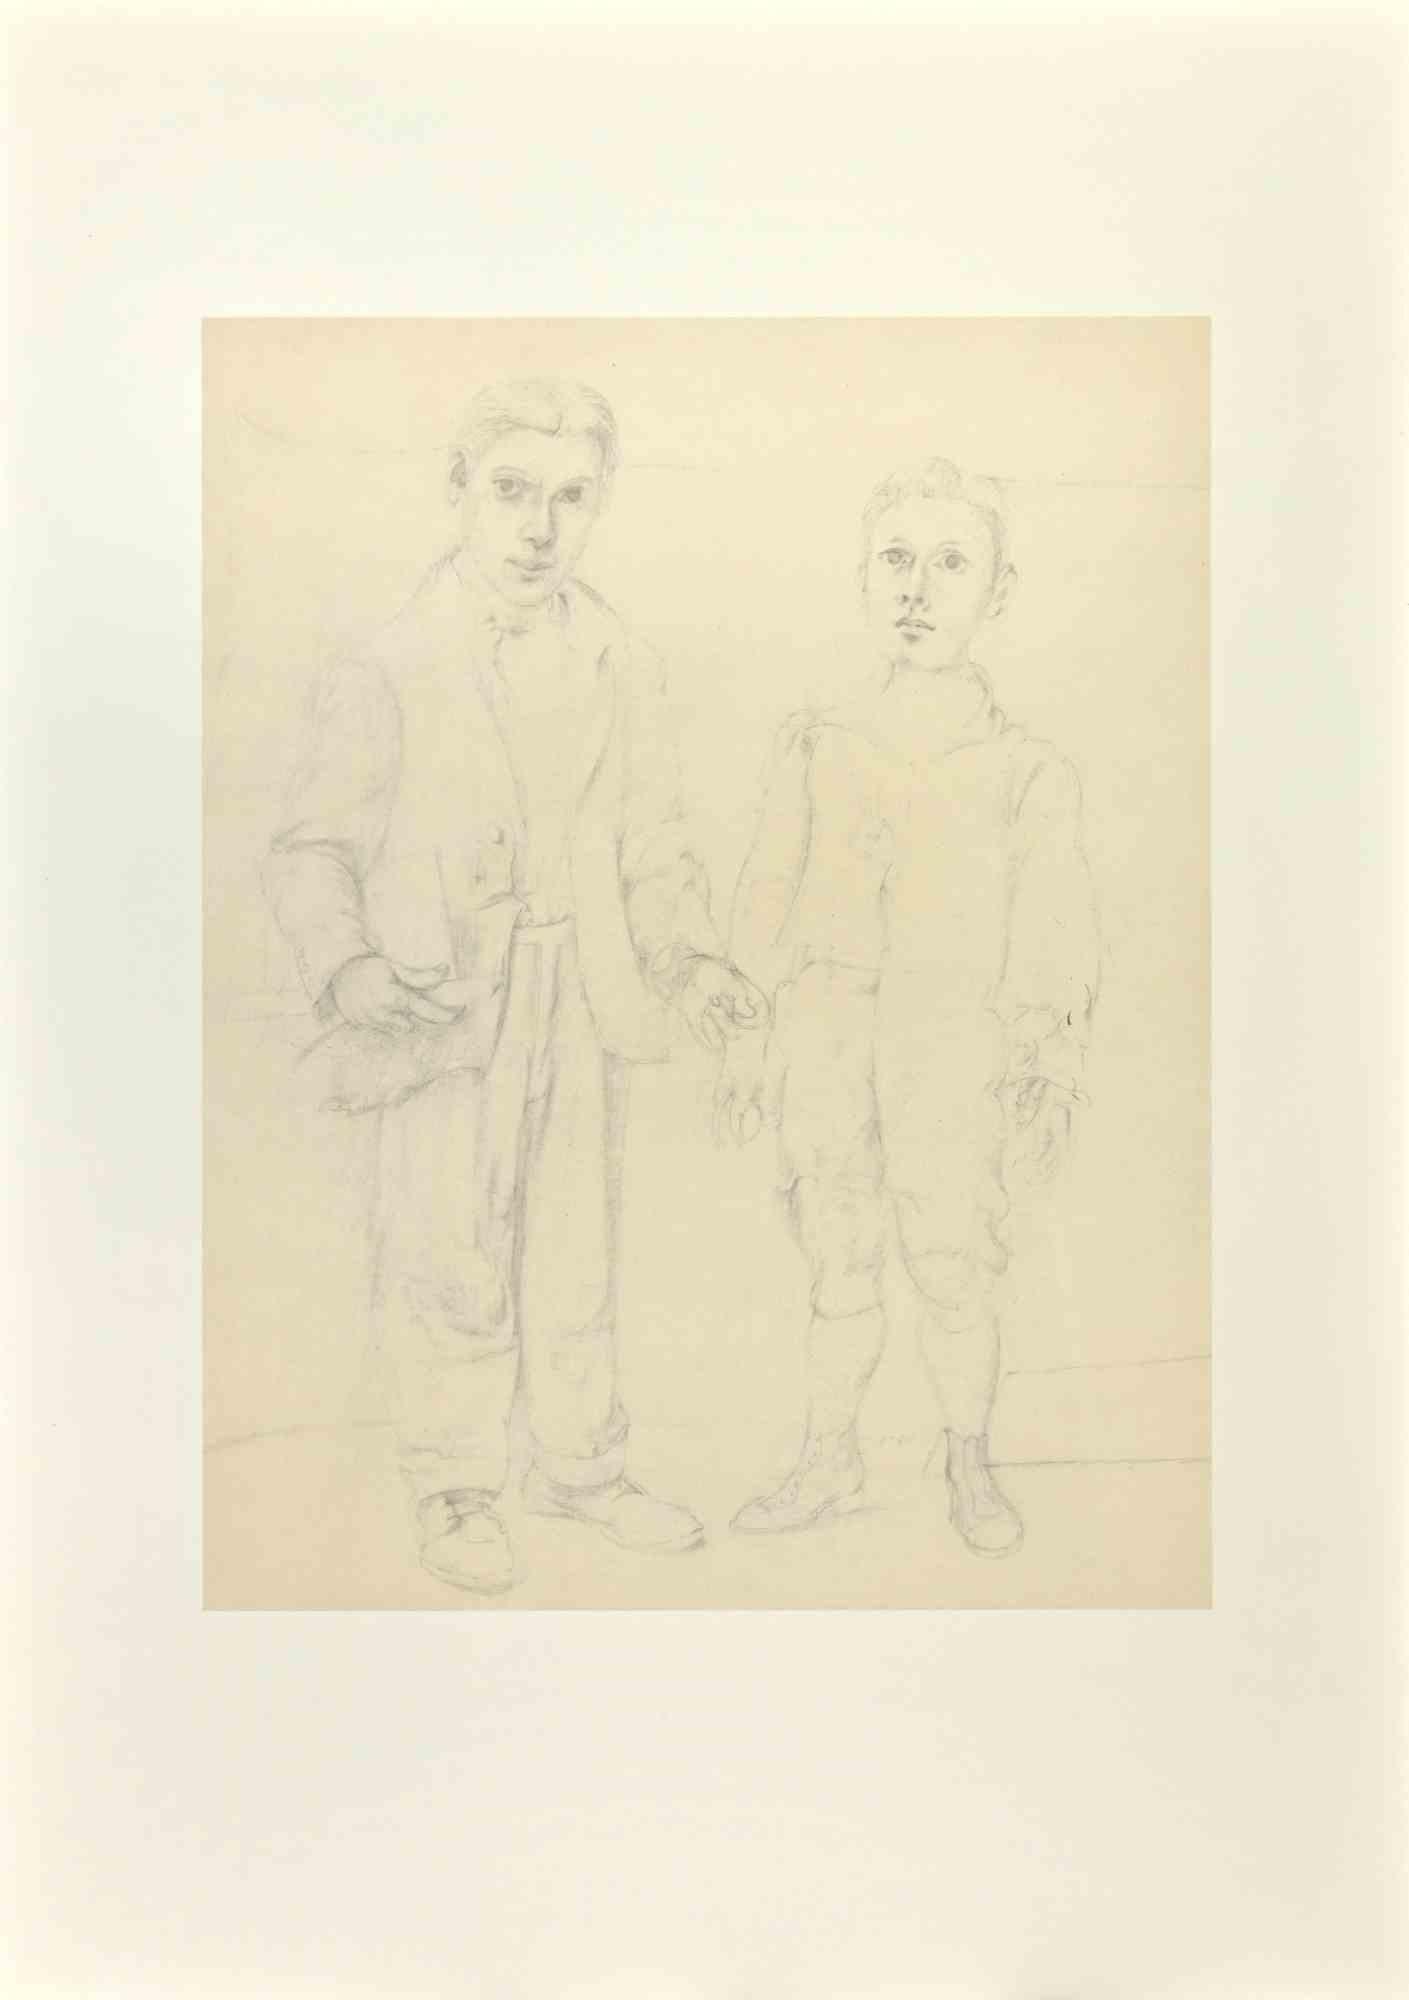 Willem de Kooning Figurative Print - Self-Portrait - Offset and Lithograph after Willem De Kooning - 1985